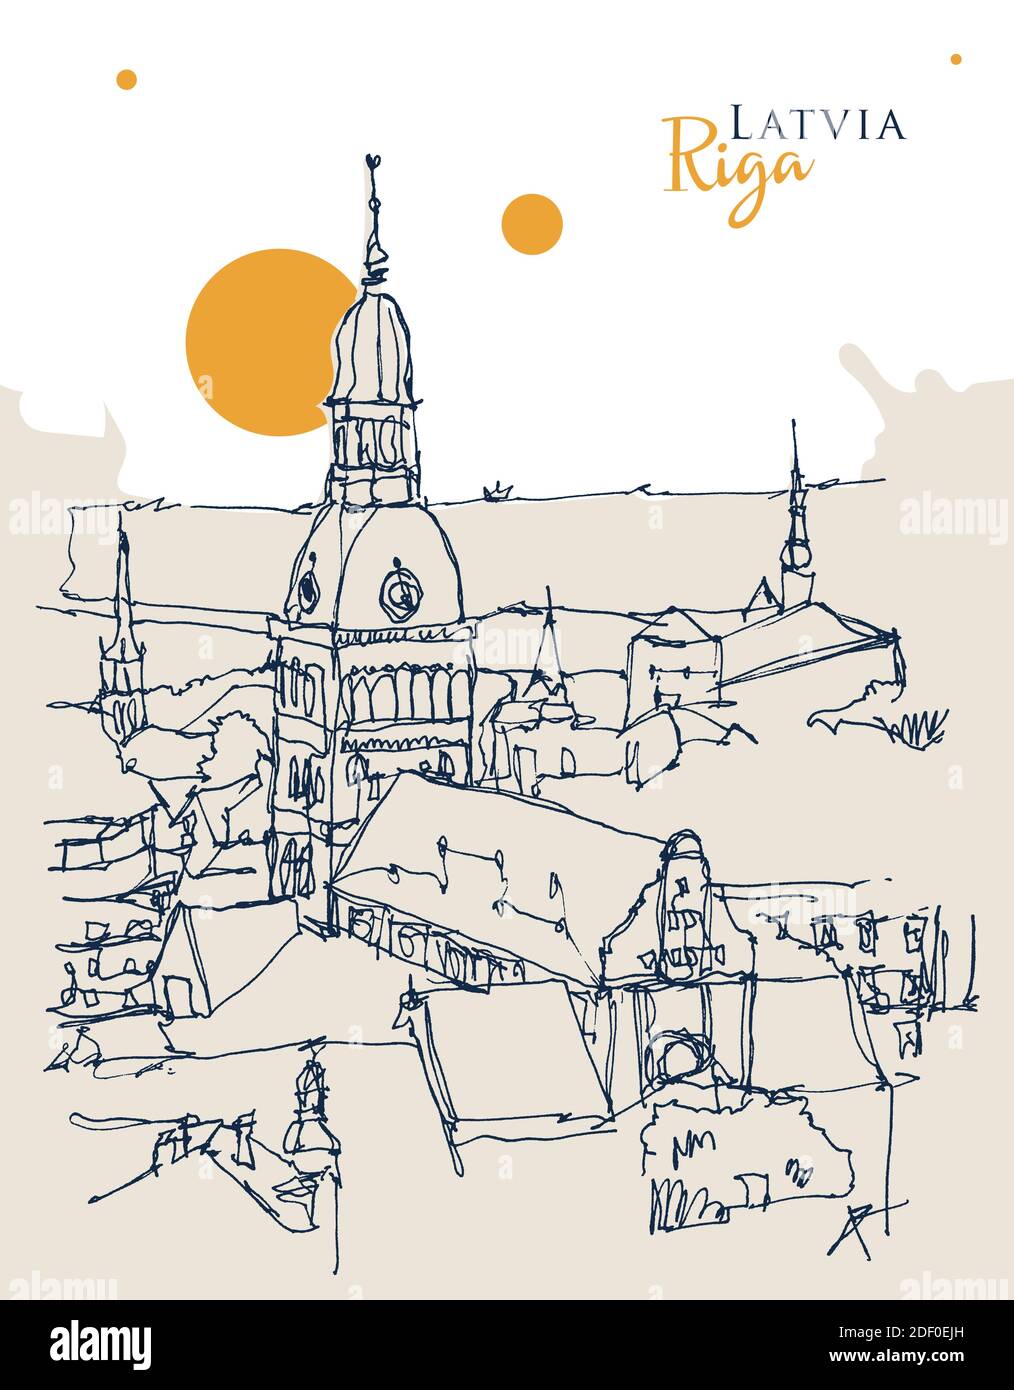 Disegno grafico a mano del vettore di riga, la capitale della Lettonia Illustrazione Vettoriale